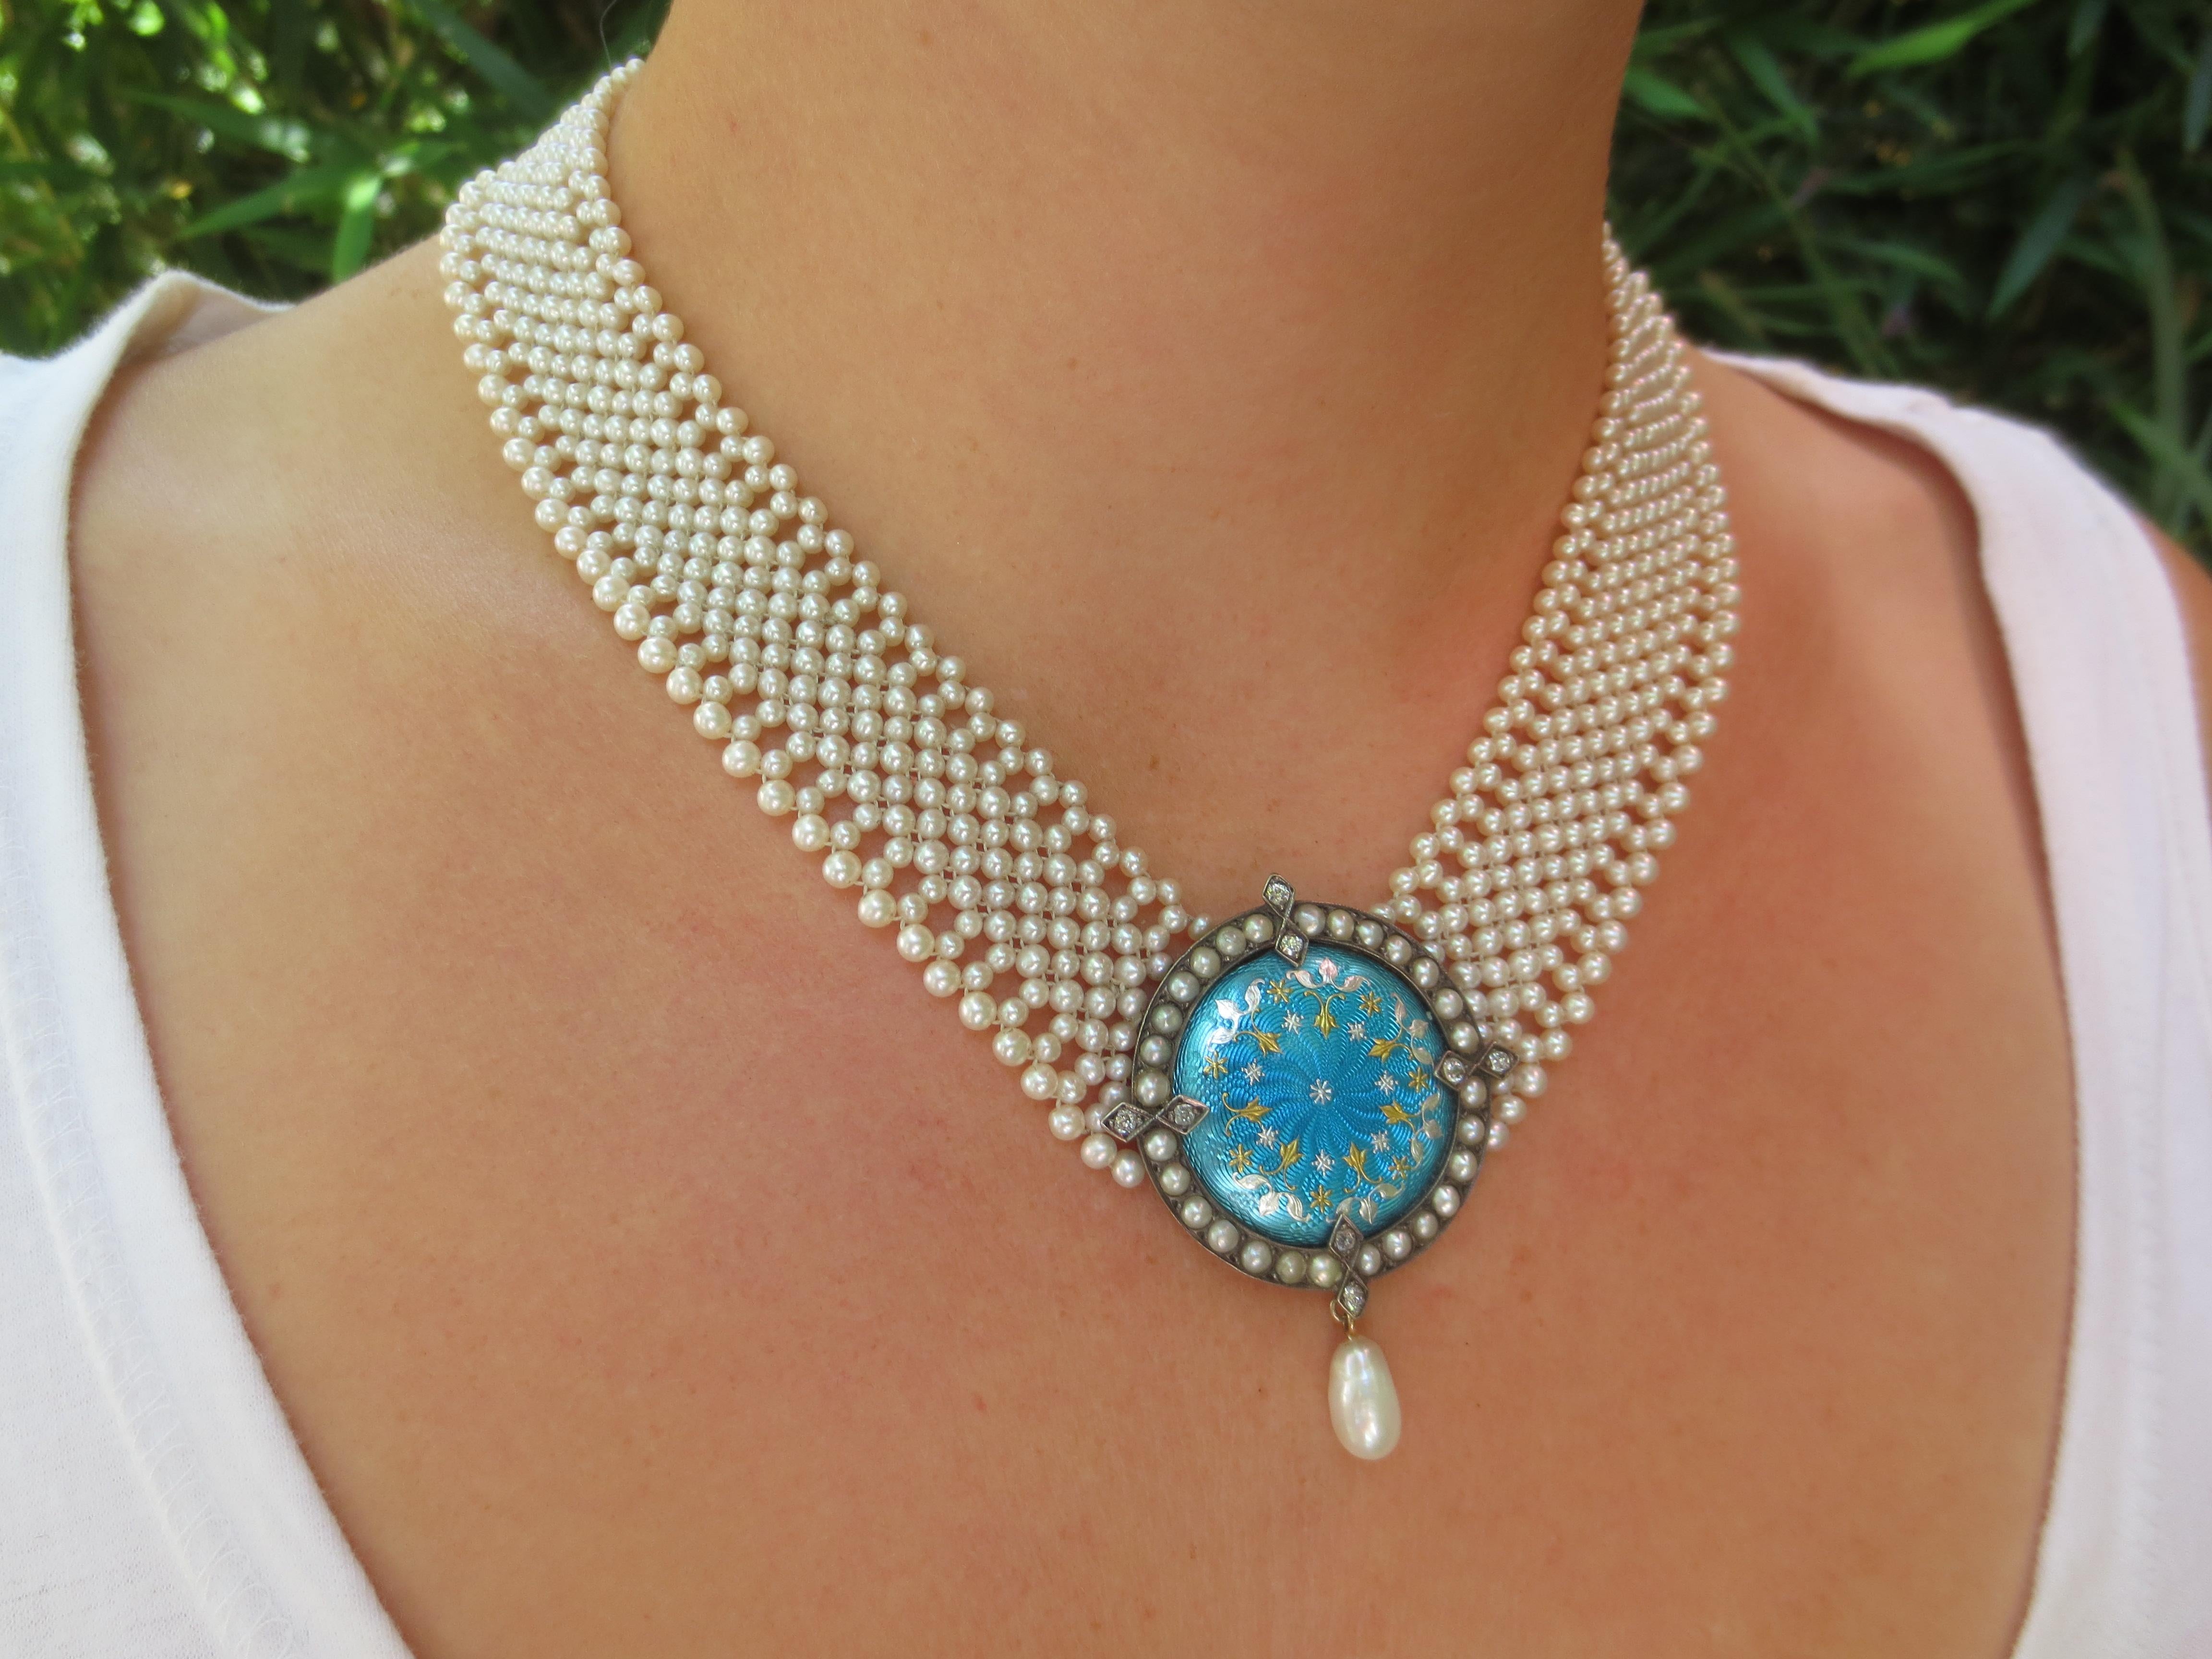 Marina J. Unique Woven Pearl Necklace with Vintage Blue Enamel Centerpiece For Sale 1